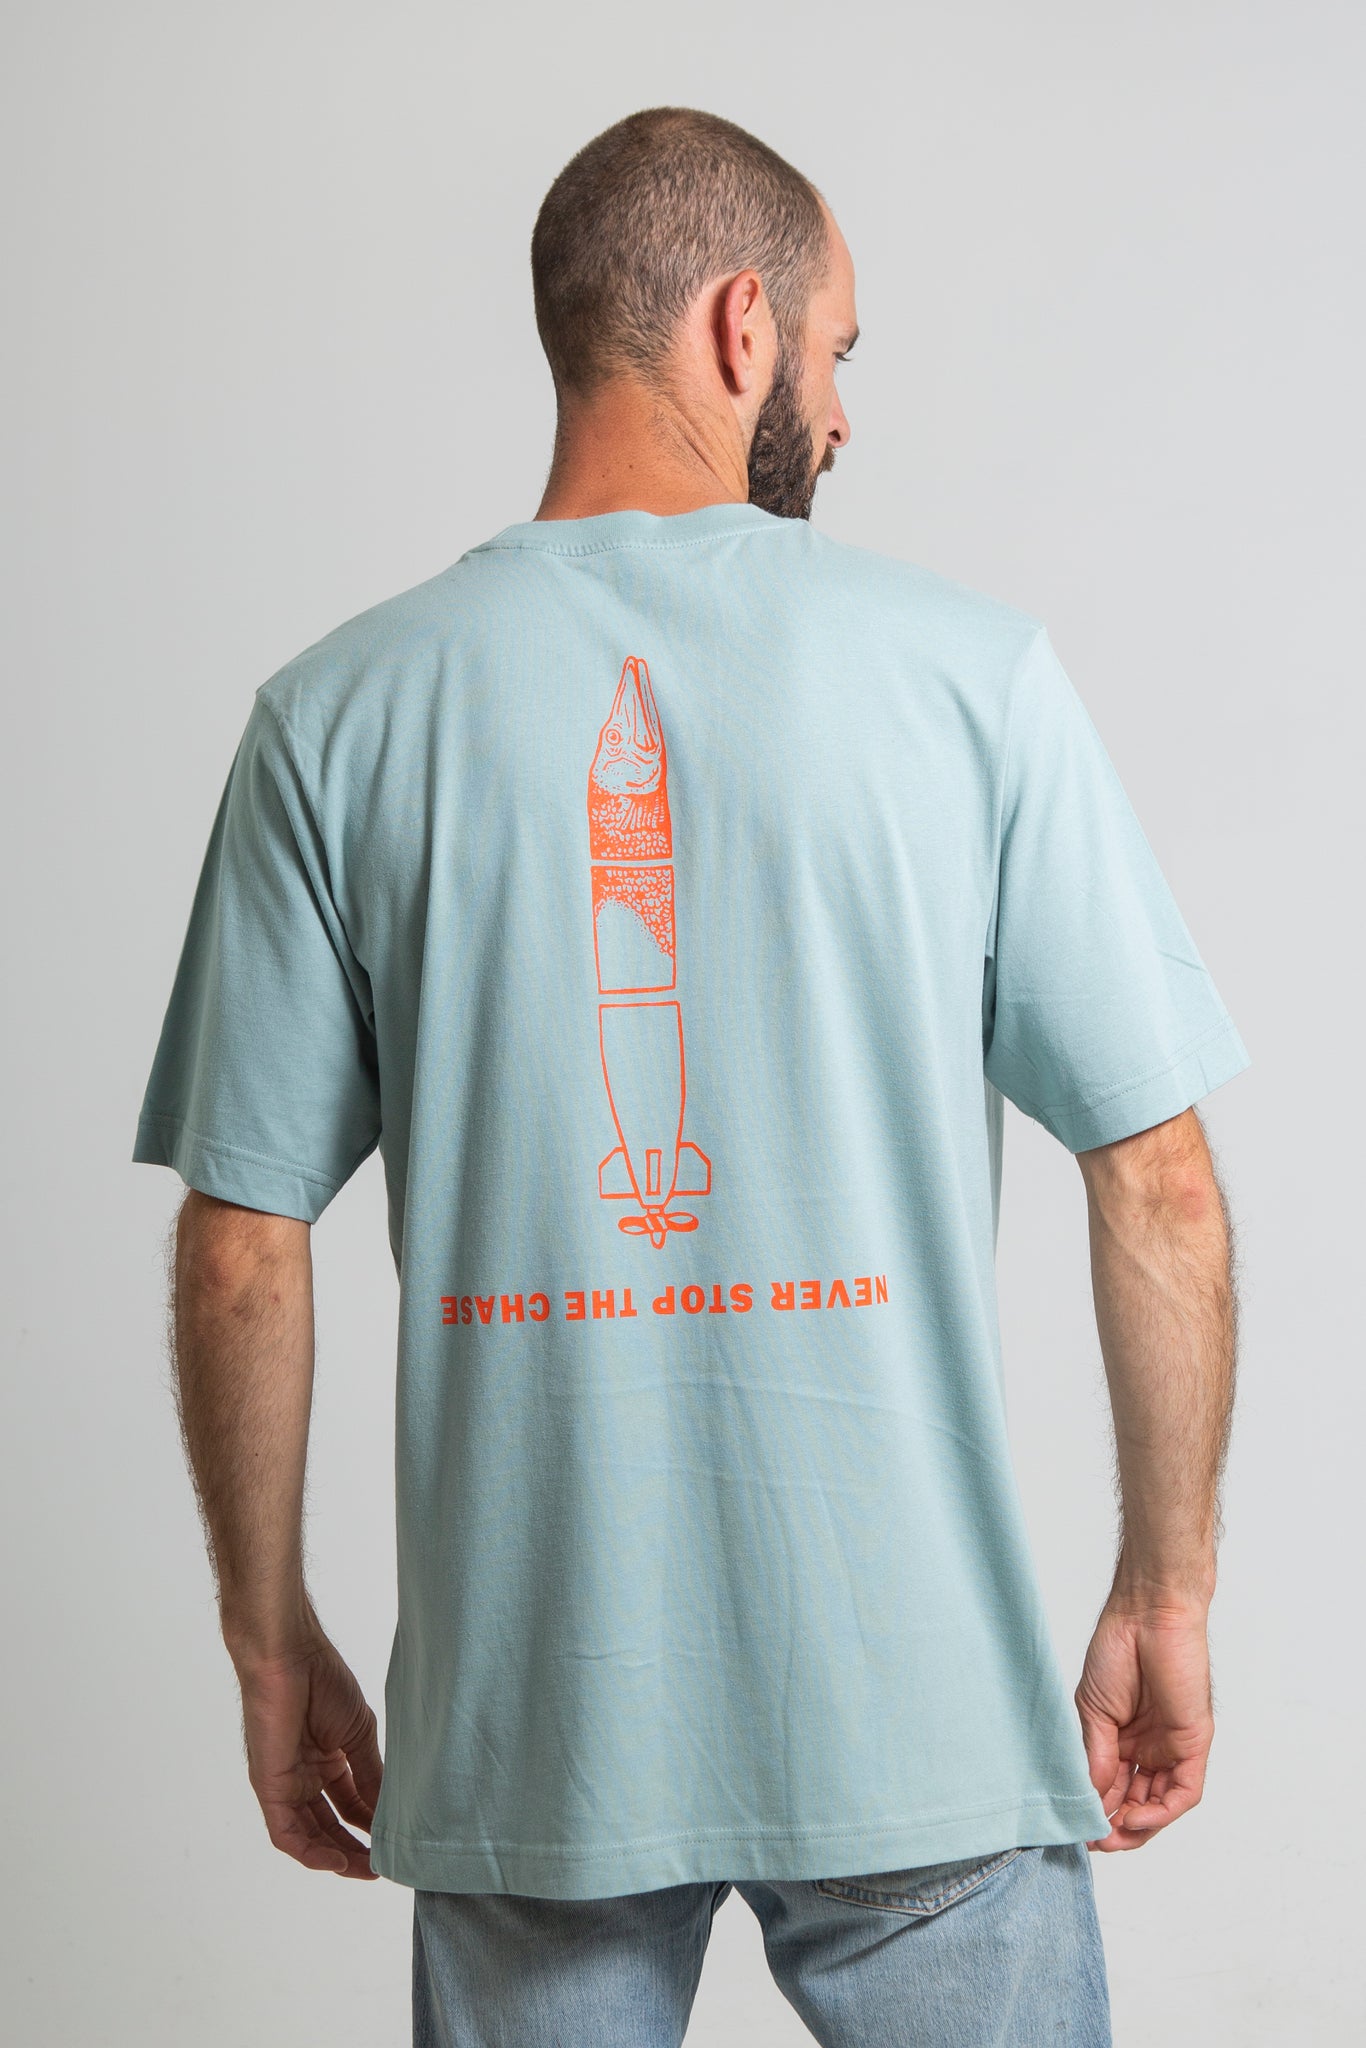 Dusk till Dawn brand - The Torpedo-shaped Pike t-shirt